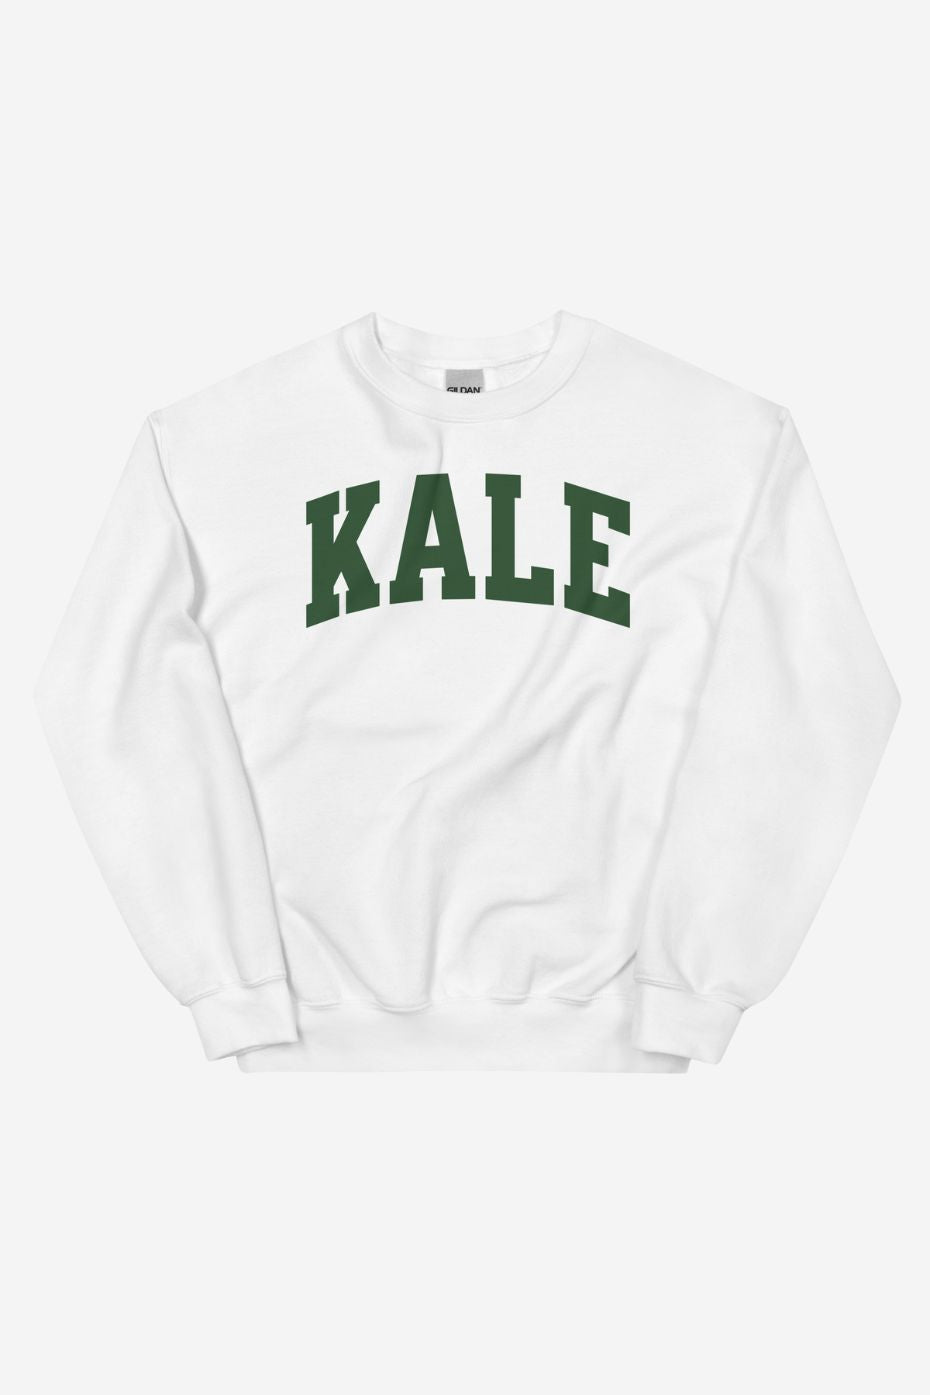 Kale - Unisex Sweatshirt